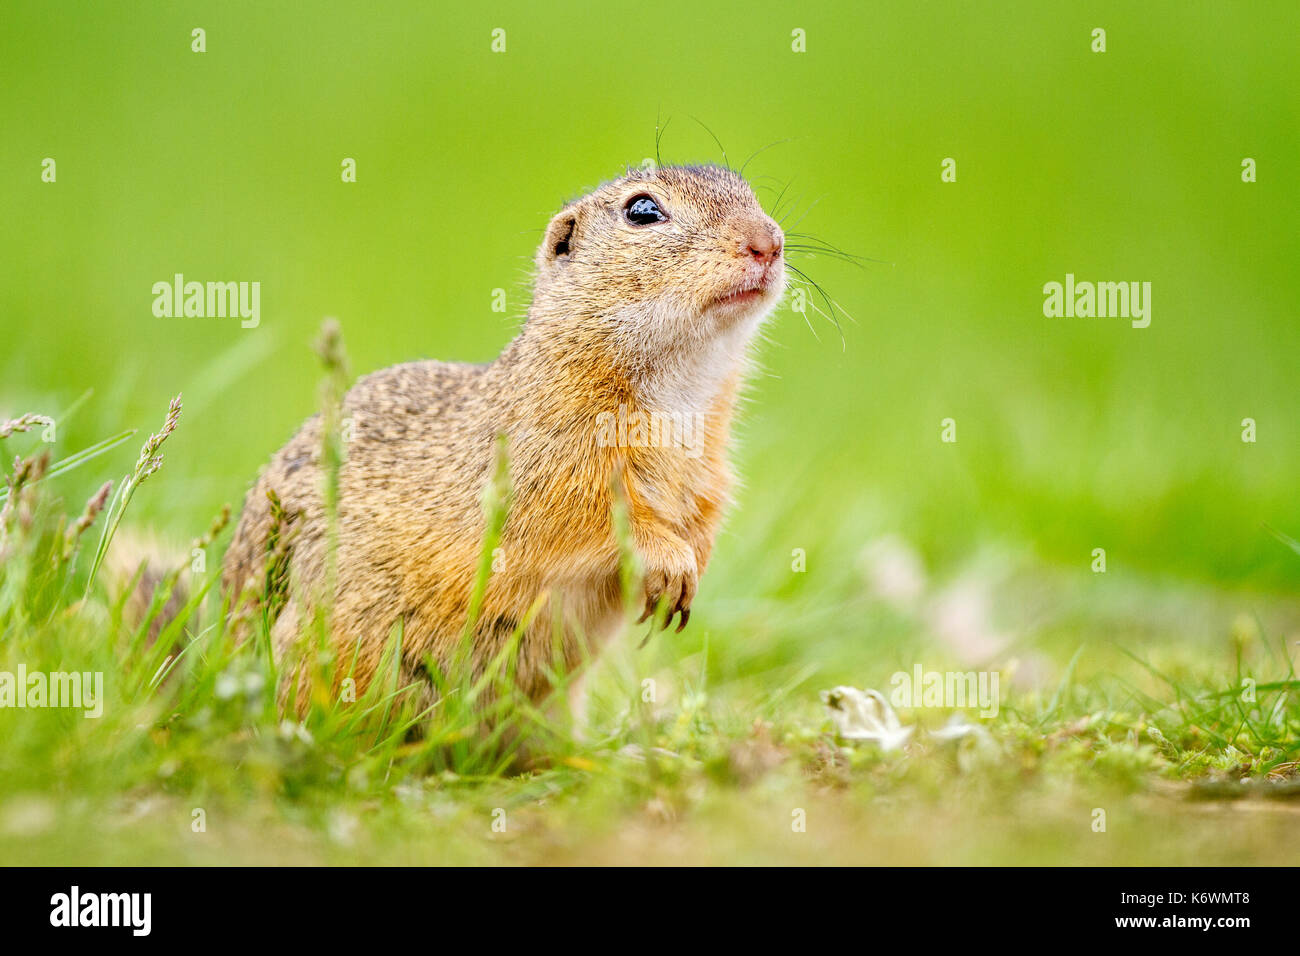 European ground squirrel or souslik (Spermophilus citellus) in meadow, Burgenland, Austria Stock Photo